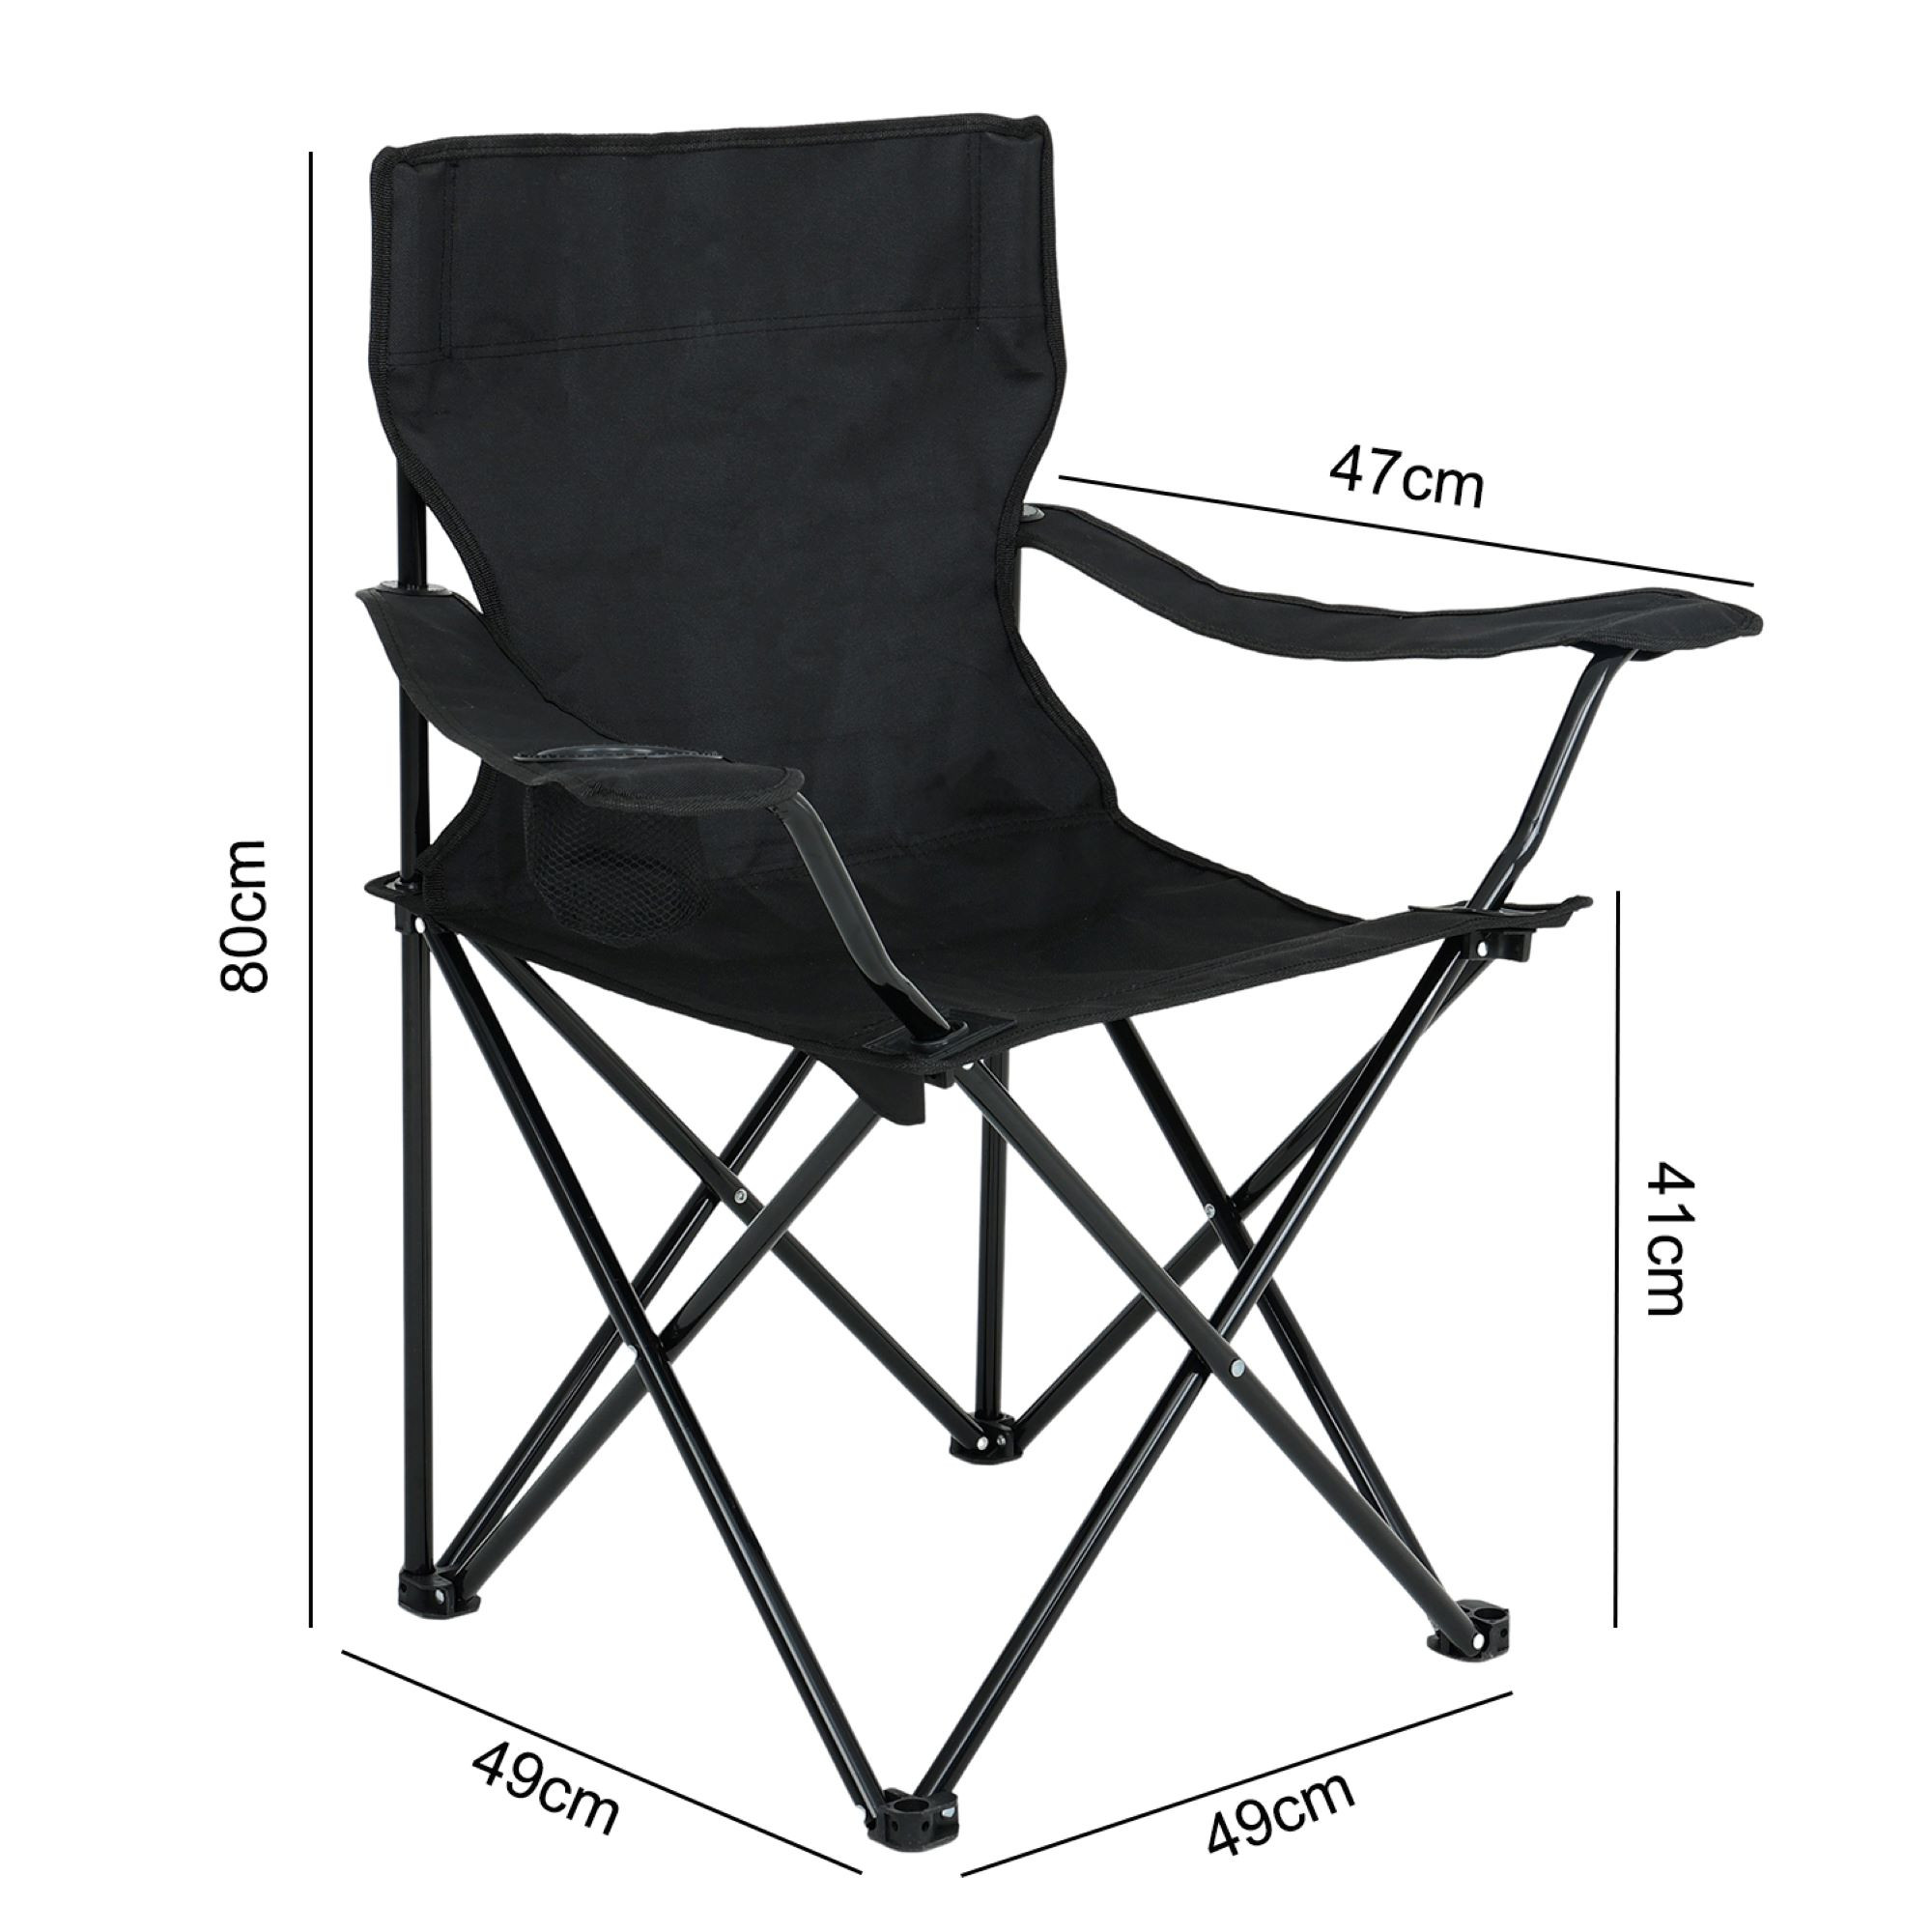 Wymiary 3D - Zestaw 2 składanych krzeseł kempingowych ANTER w kolorze czarnym - AKORD Fabryka Mebli